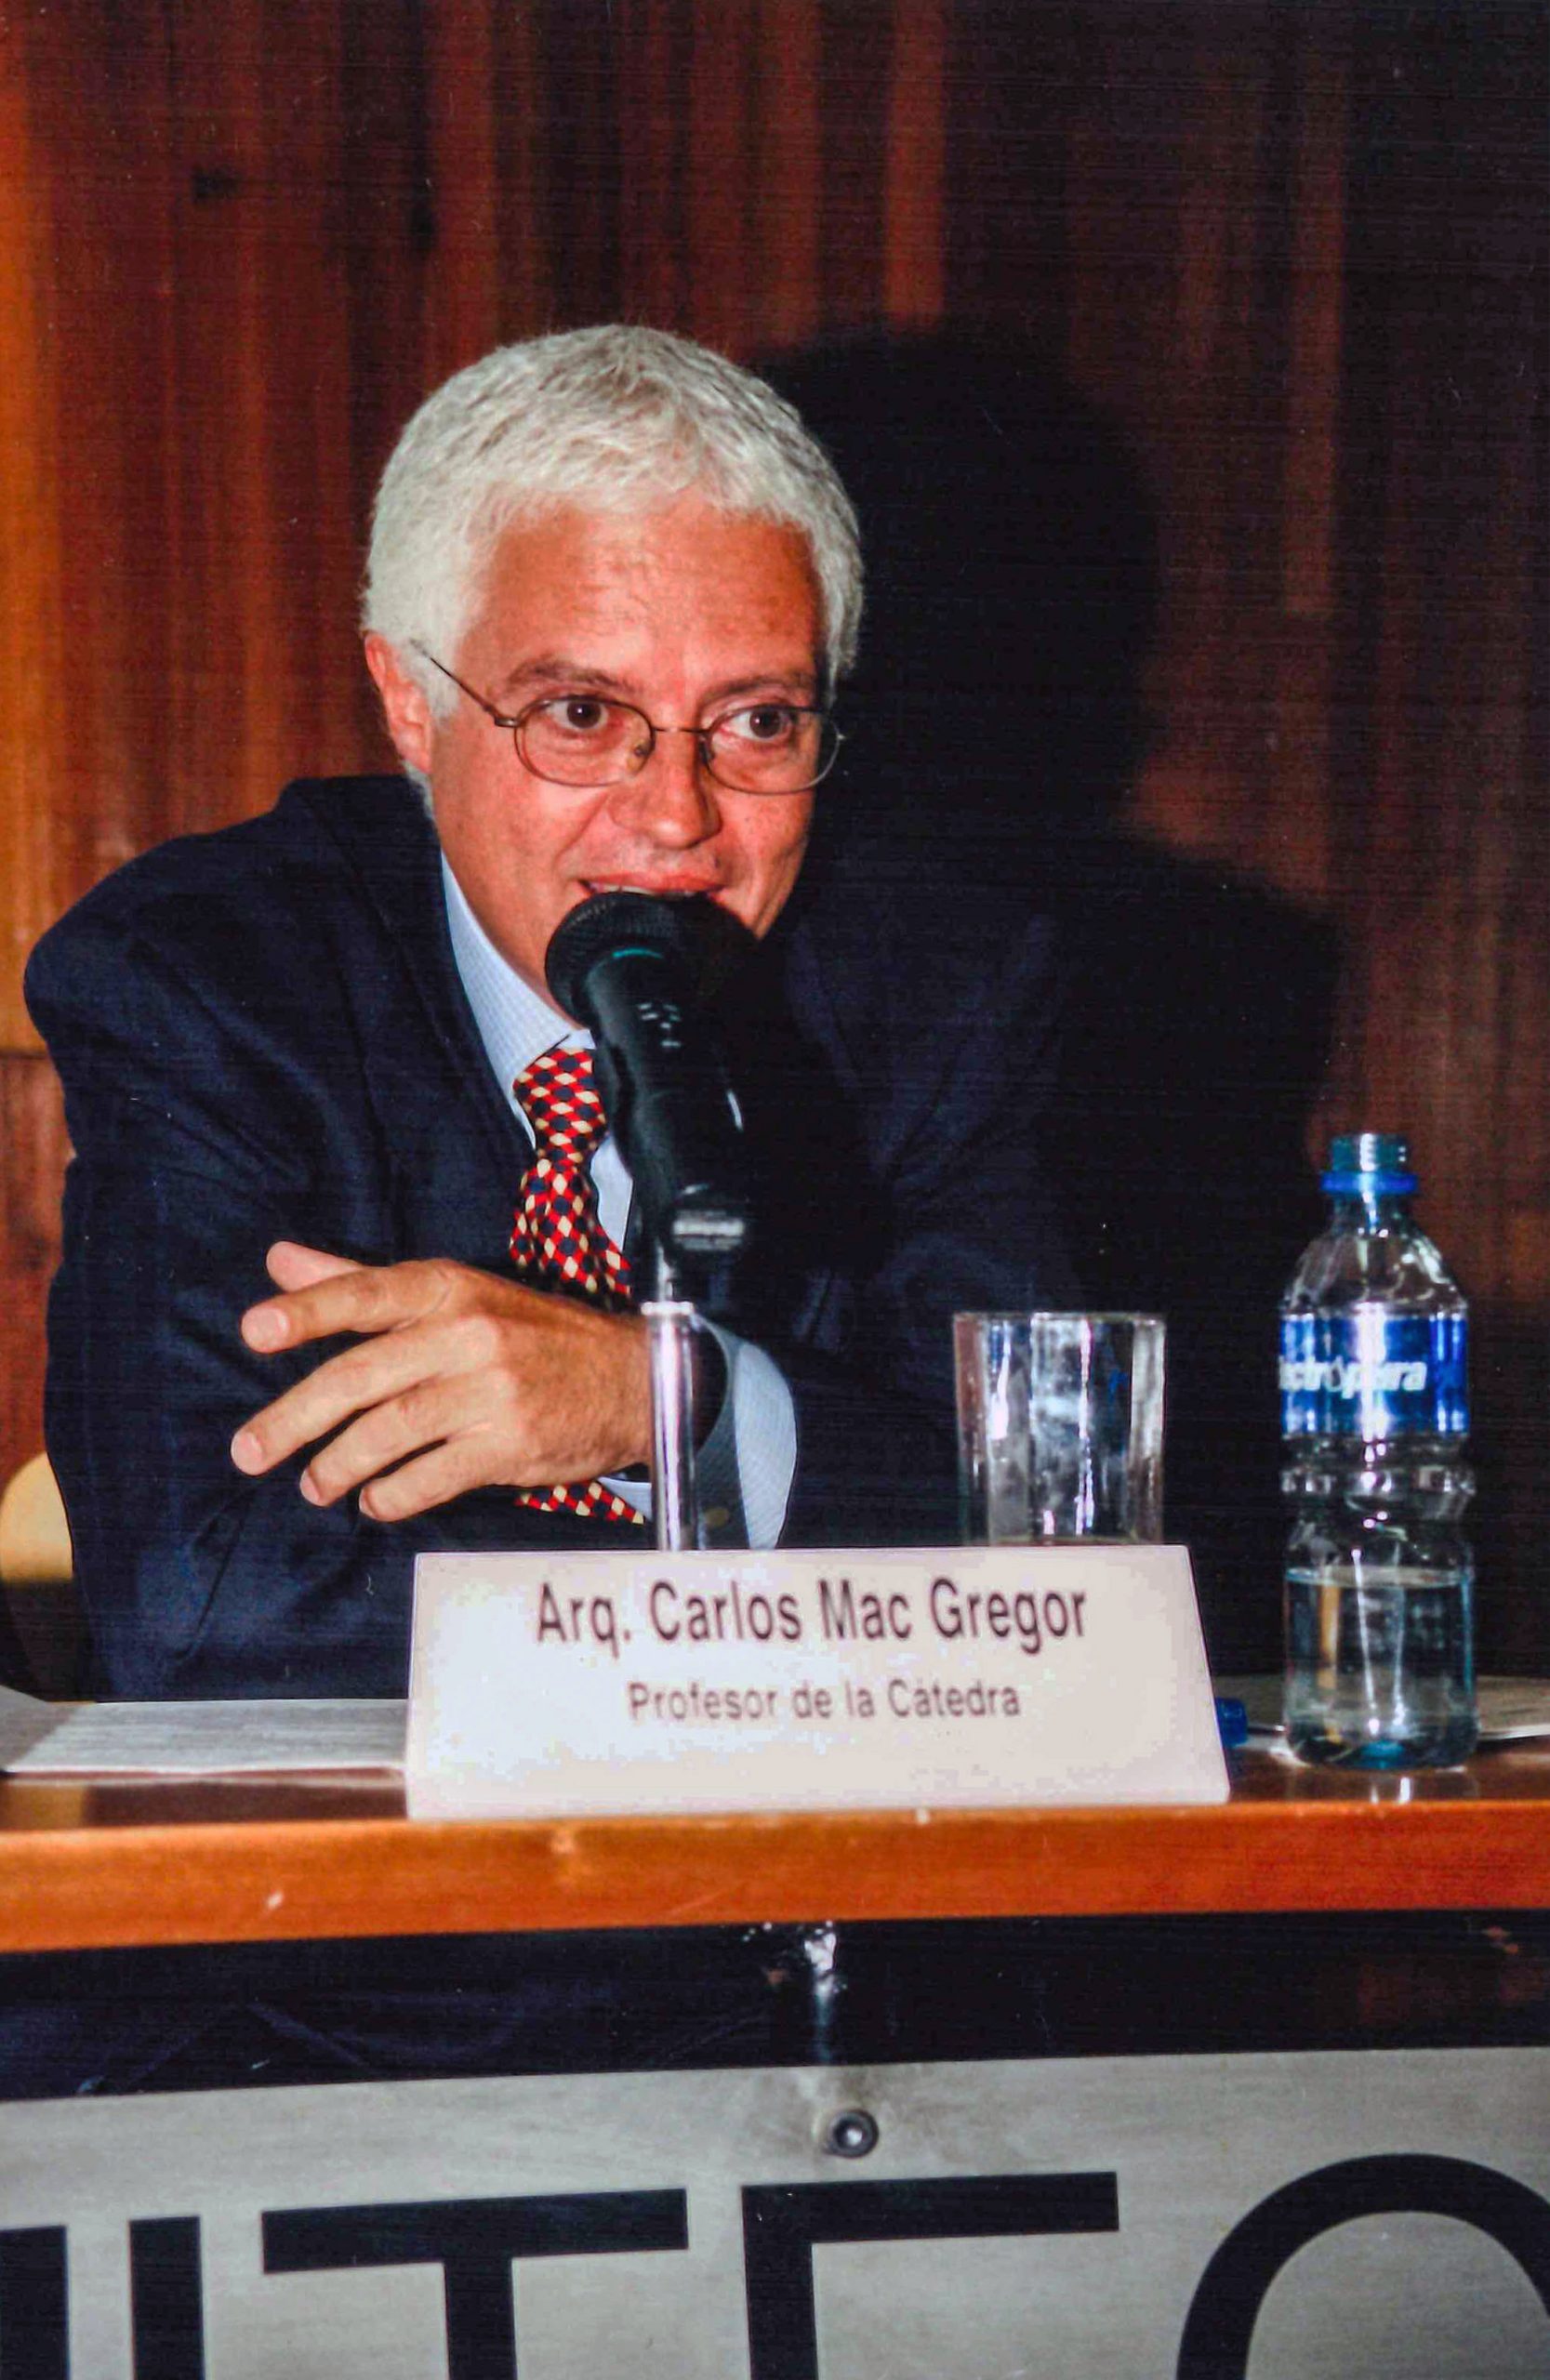  Arq. Carlos Mac Gregor. Fotografía: Archivo de la Coordinación de Producción Audiovisual FA